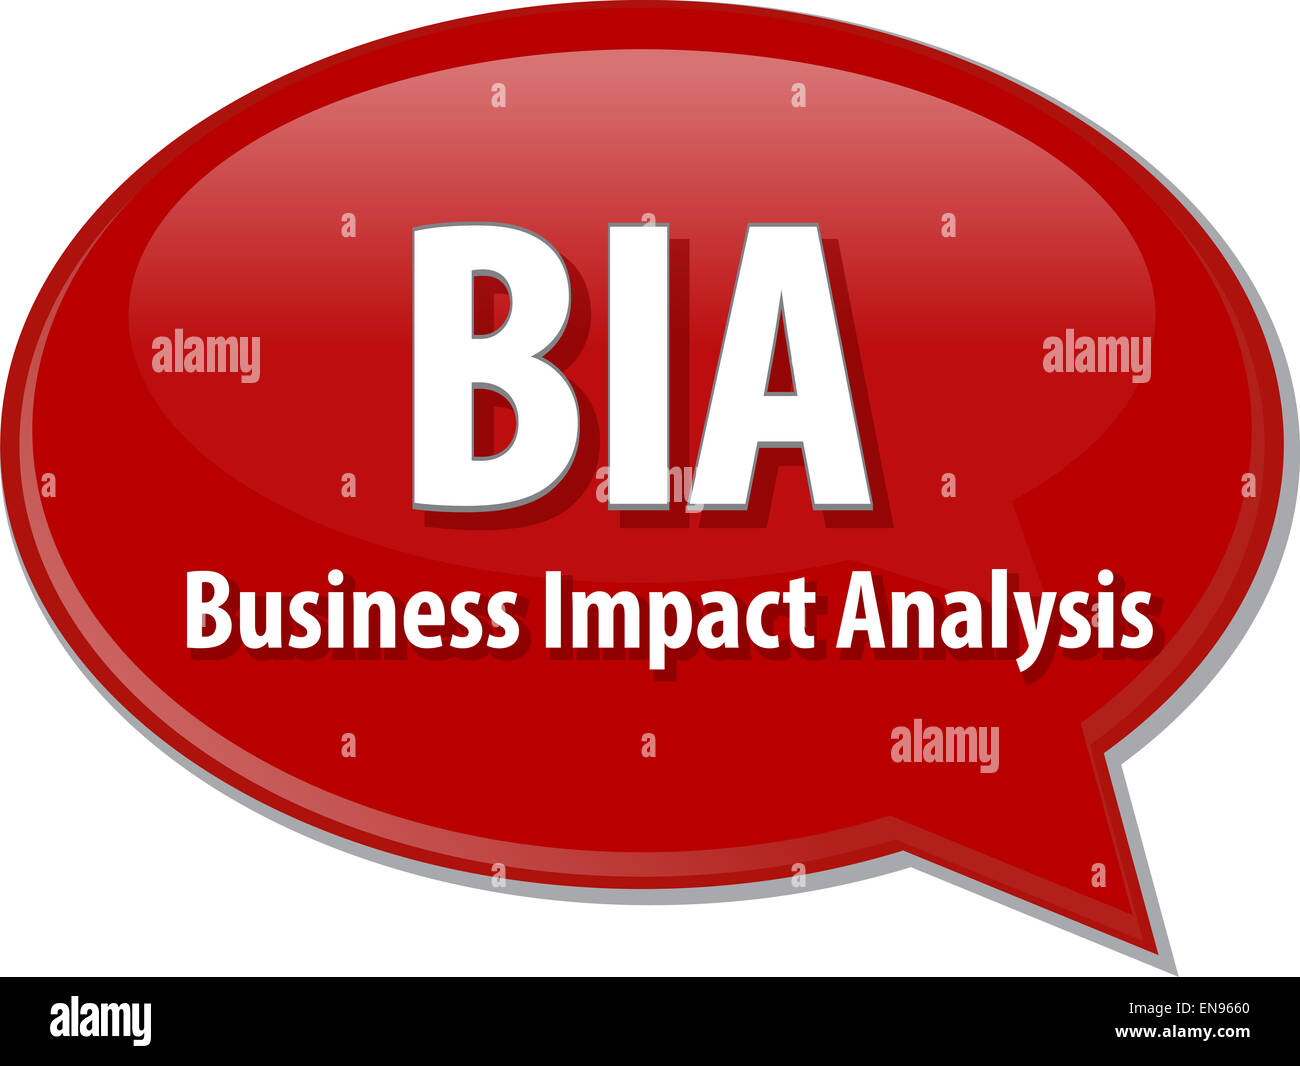 https://c8.alamy.com/comp/EN9660/word-speech-bubble-illustration-of-business-acronym-term-bia-business-EN9660.jpg